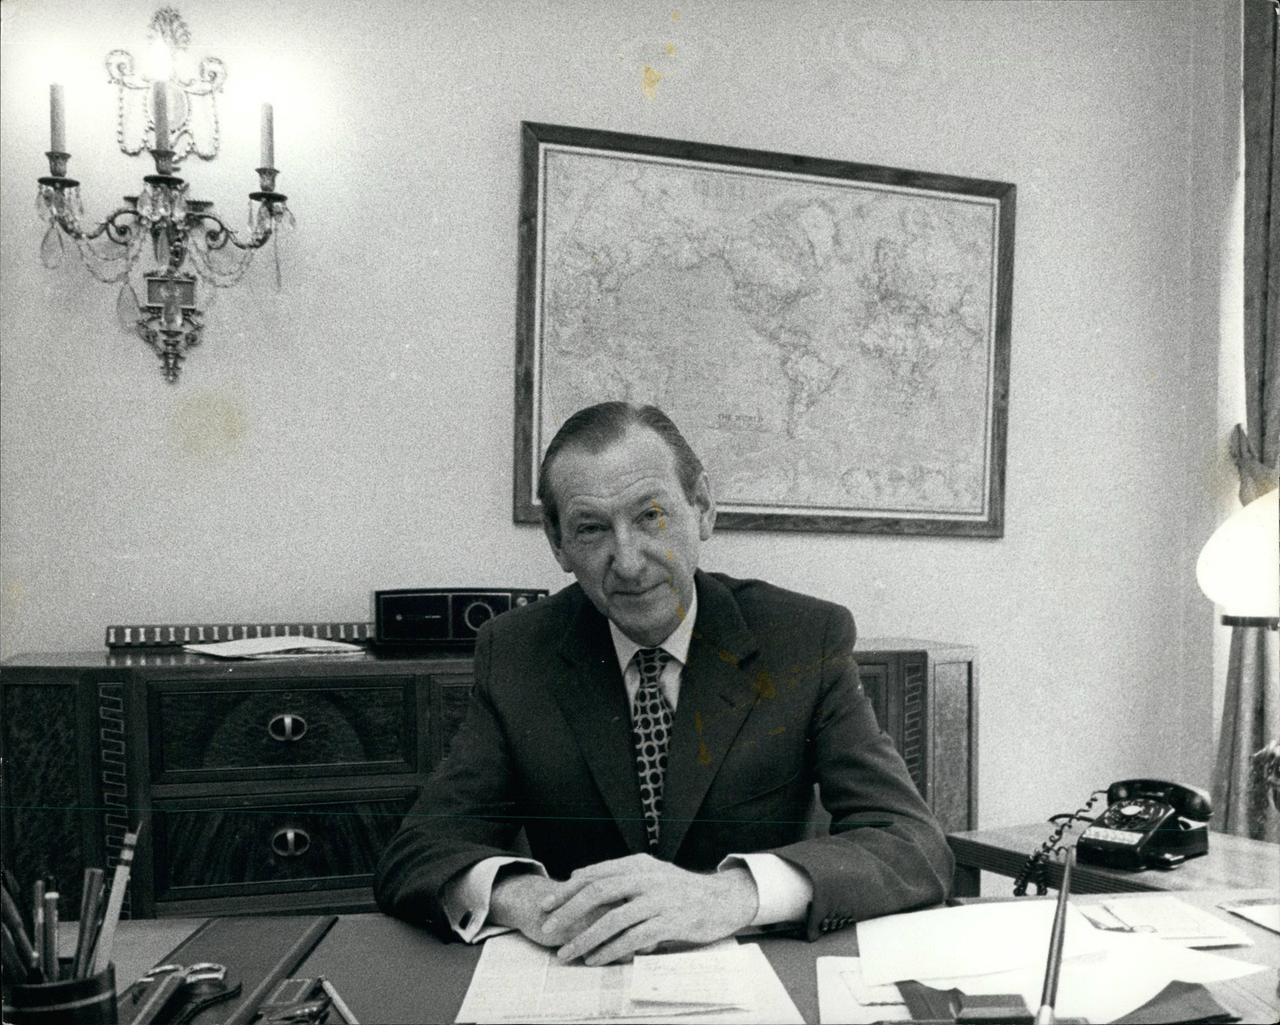 Kurt Waldheim am Schreibtisch in einem Büro 1971.